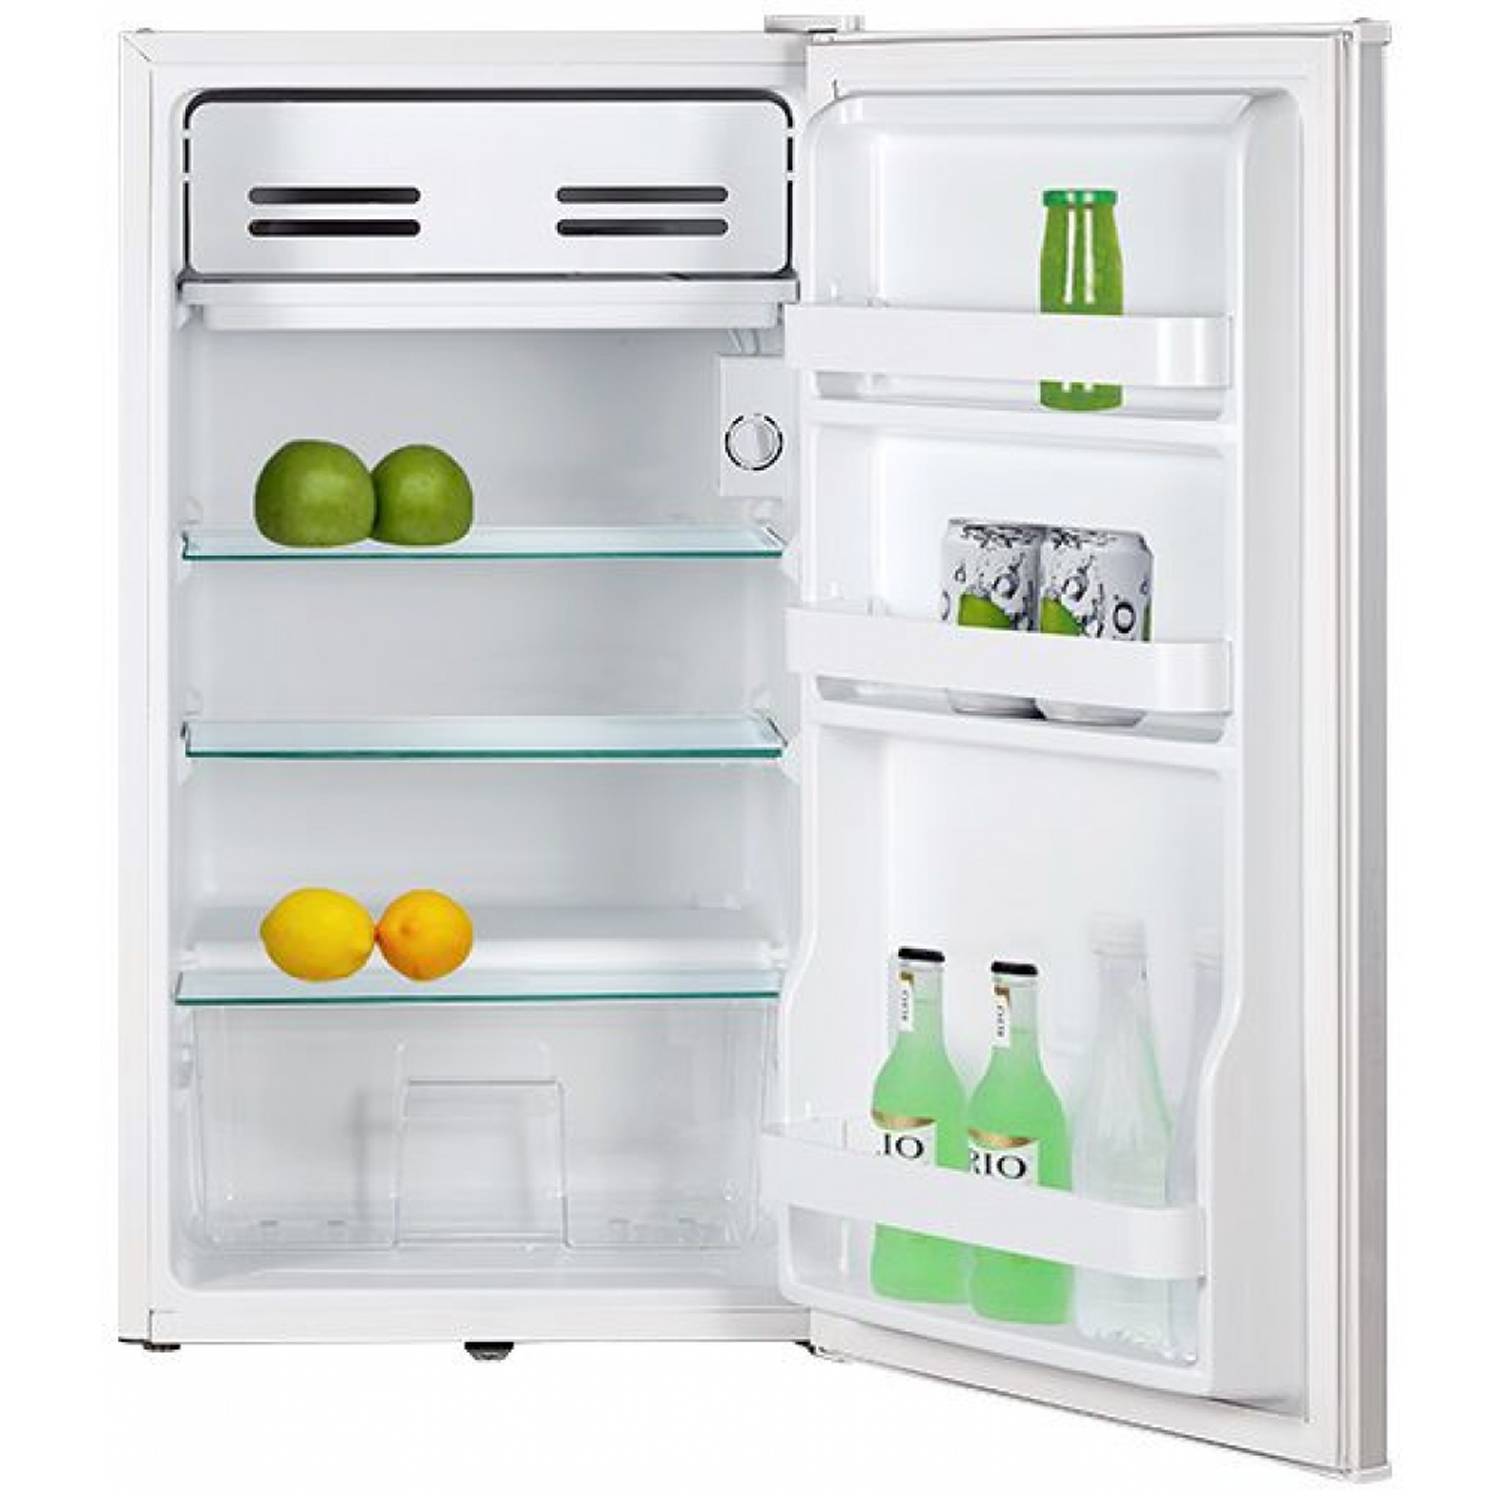 Однокамерный холодильник: описание, плюсы и минусы, топ-7